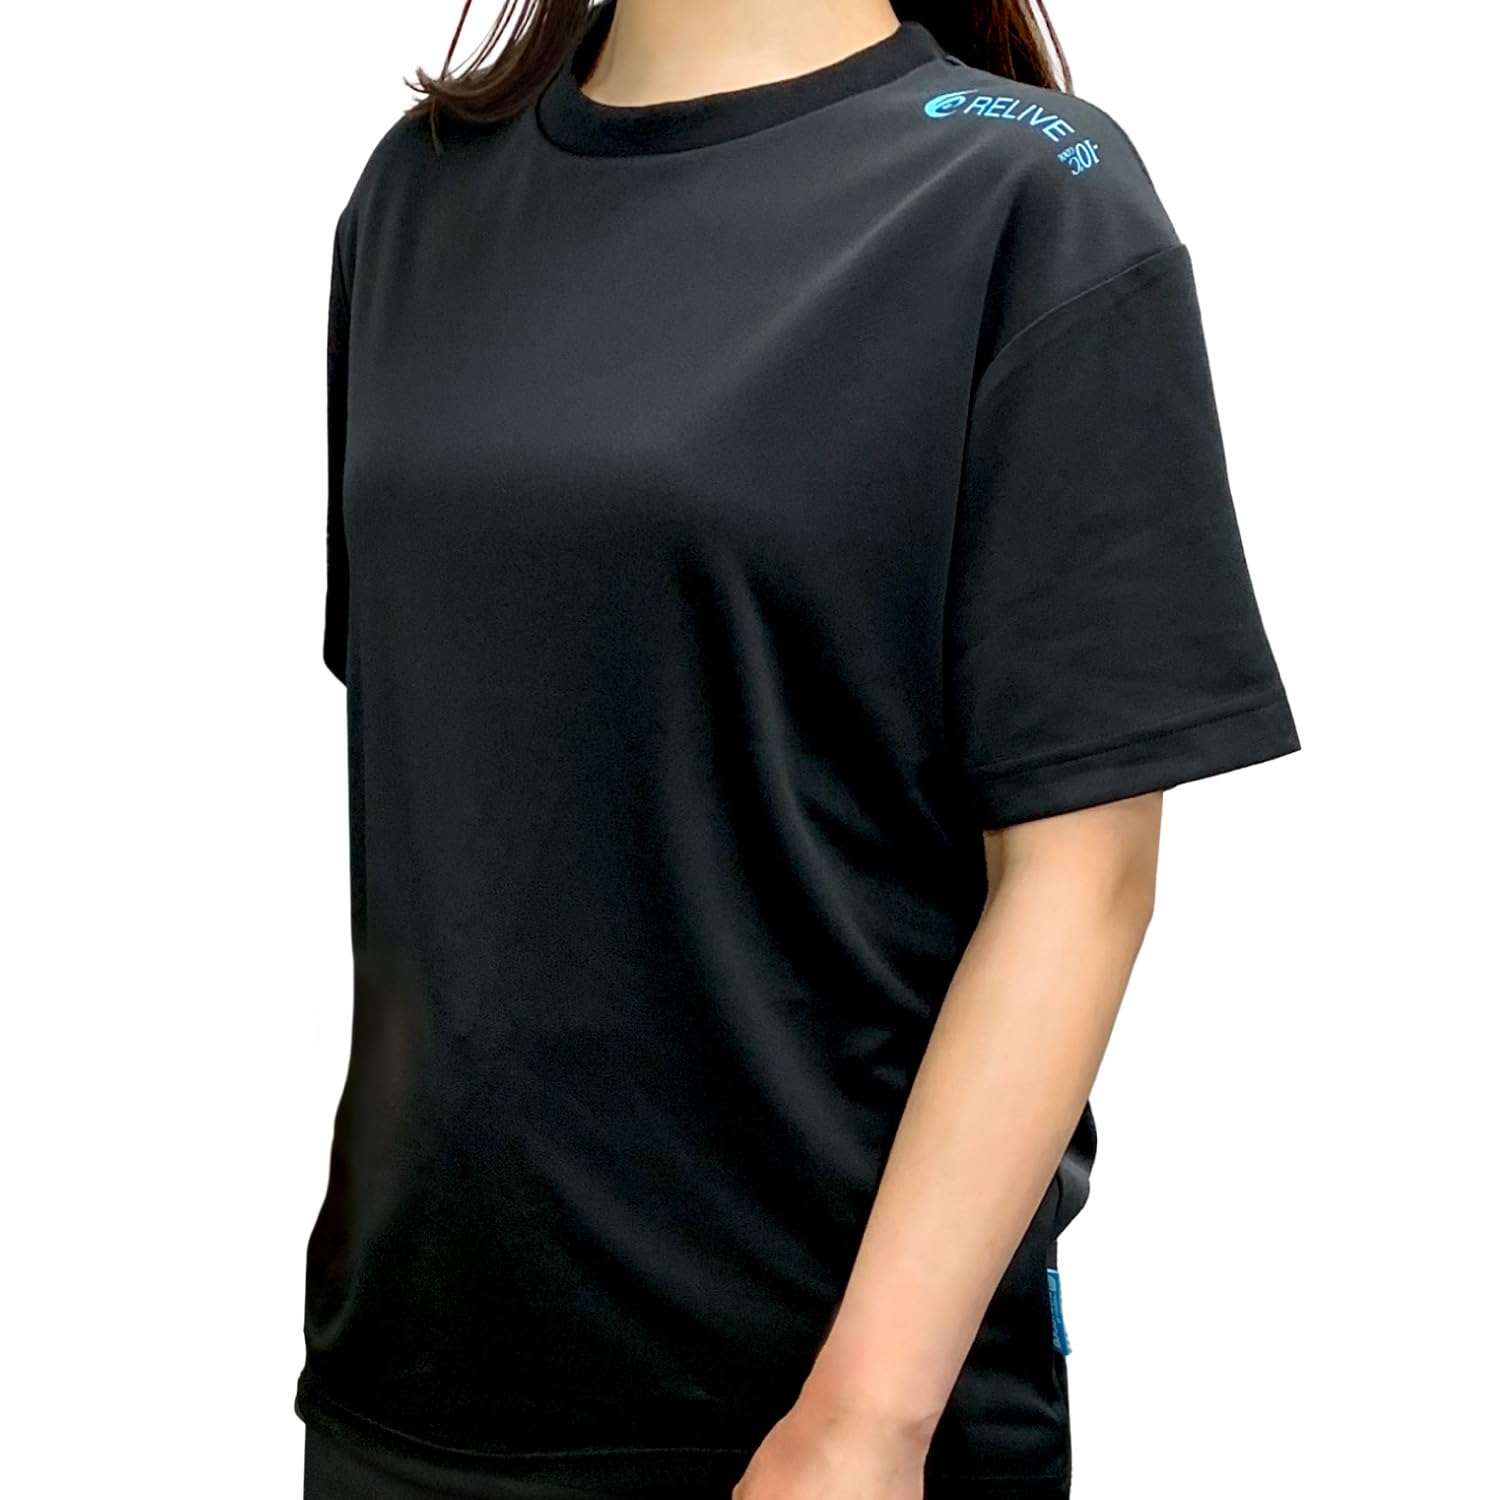 リライブシャツ 冷感タイプ プロ版 丸ネック/ポリエステル 特許取得 トレーニングウェア パワーシャツ リカバリーウェア 男女兼用 (S, ブ